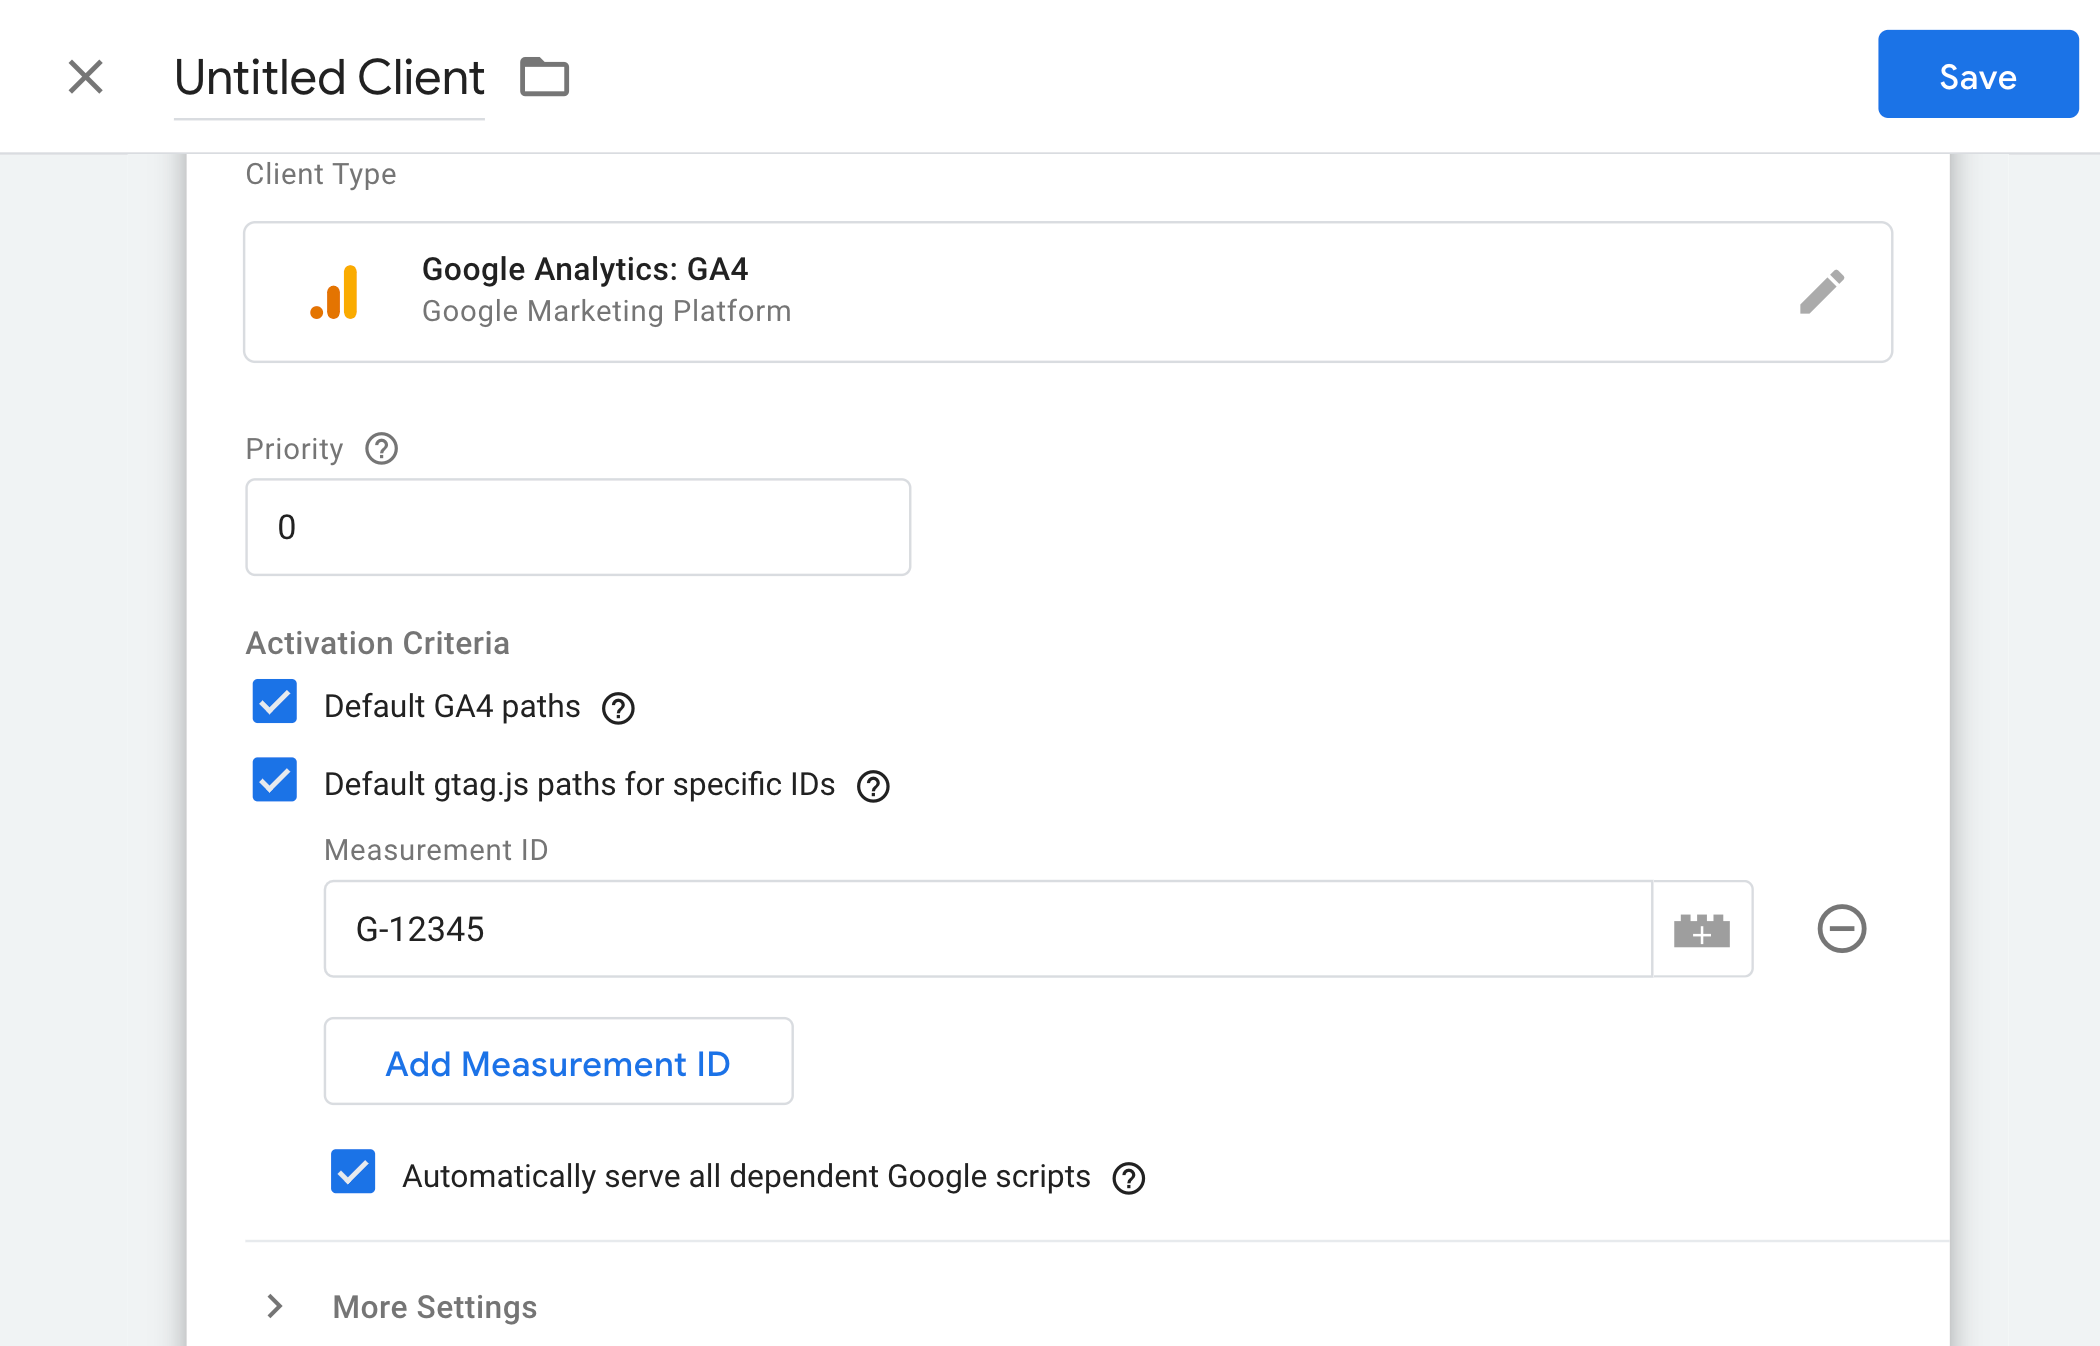 Configuração do cliente Google Analytics: GA4